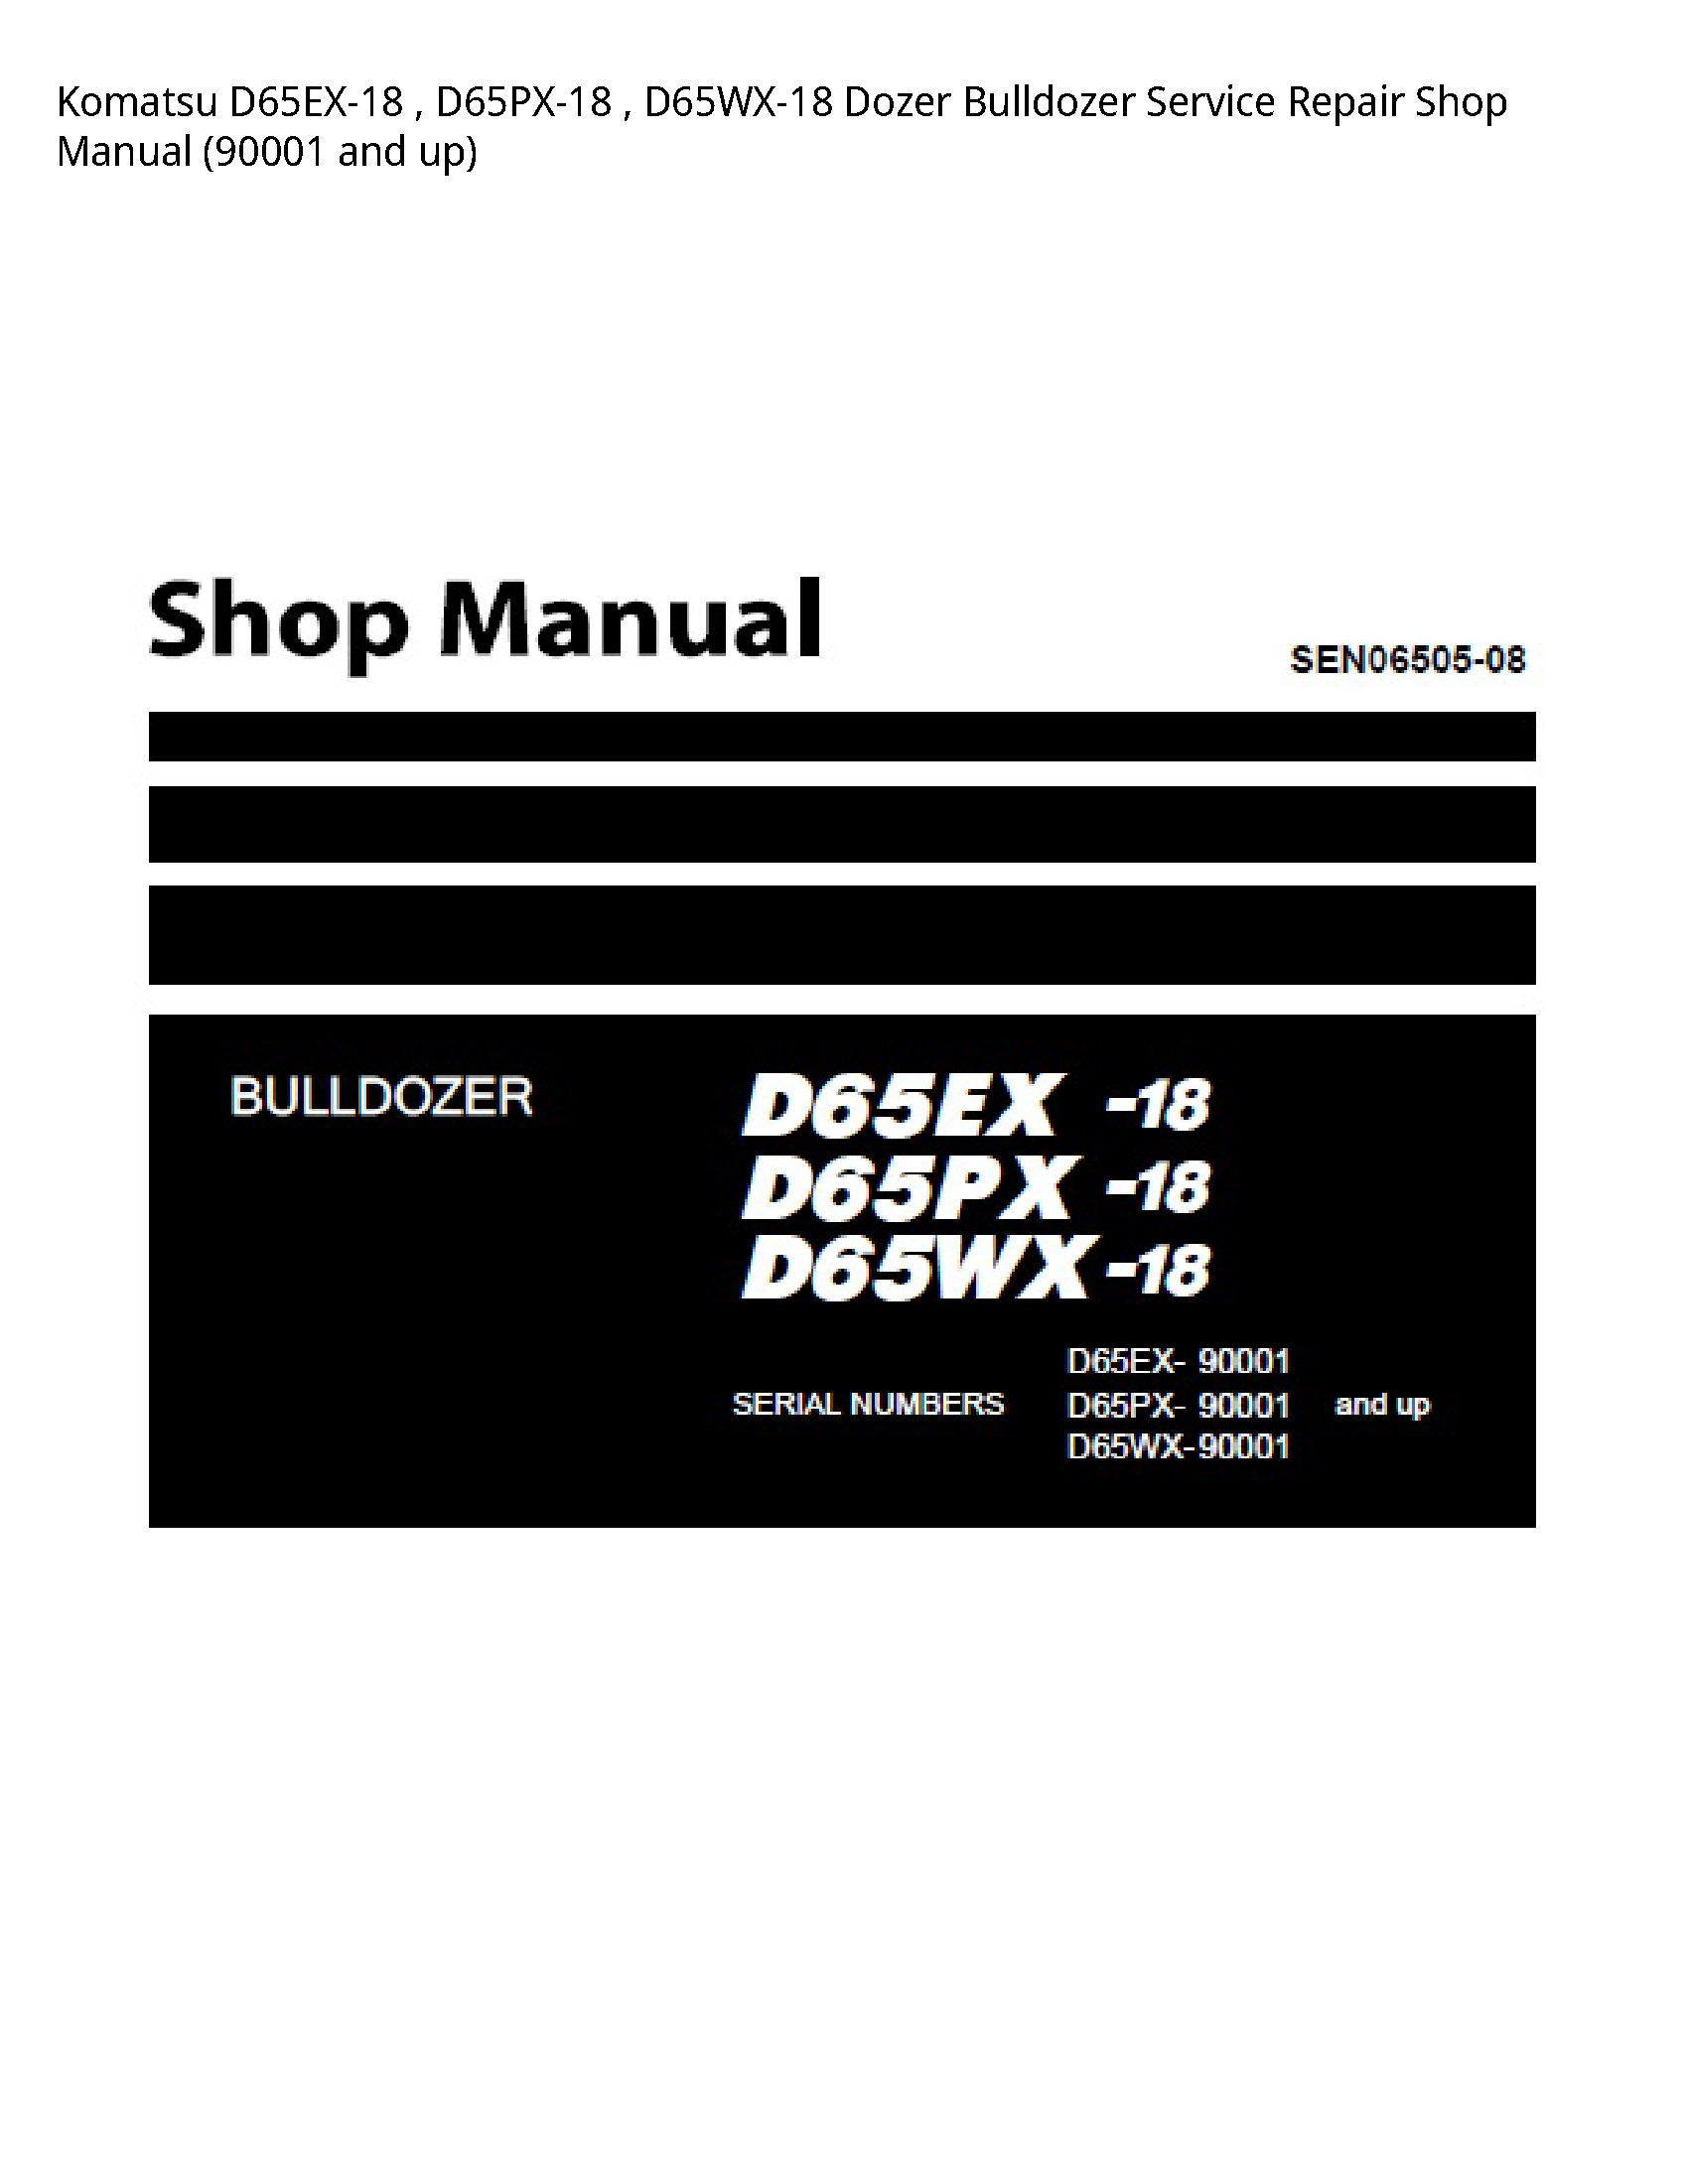 KOMATSU D65EX-18 Dozer Bulldozer manual